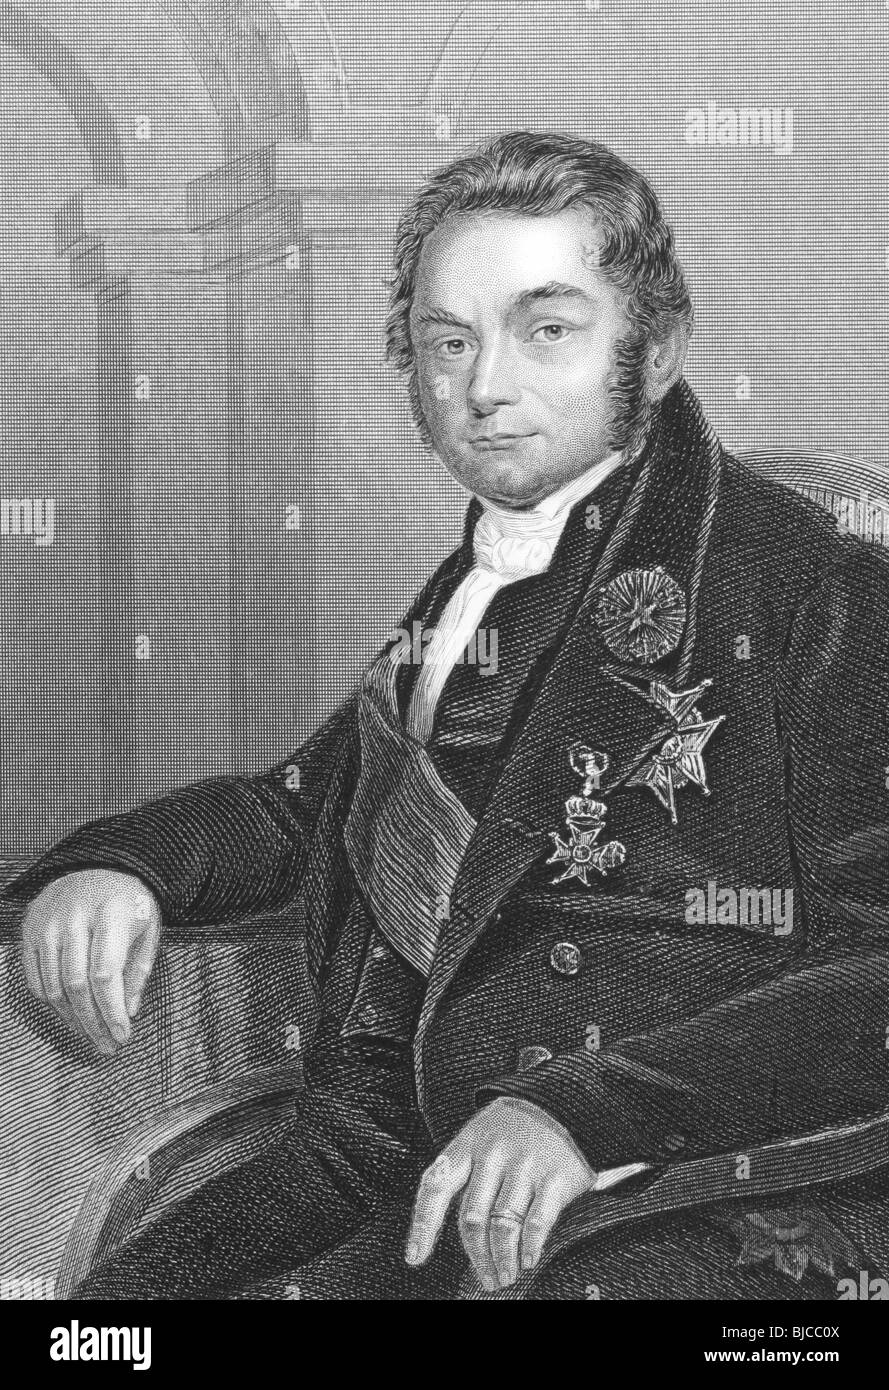 Jons Jacob Berzelius (1779-1848) gravure sur des années 1800. Le père de la chimie suédois. Banque D'Images